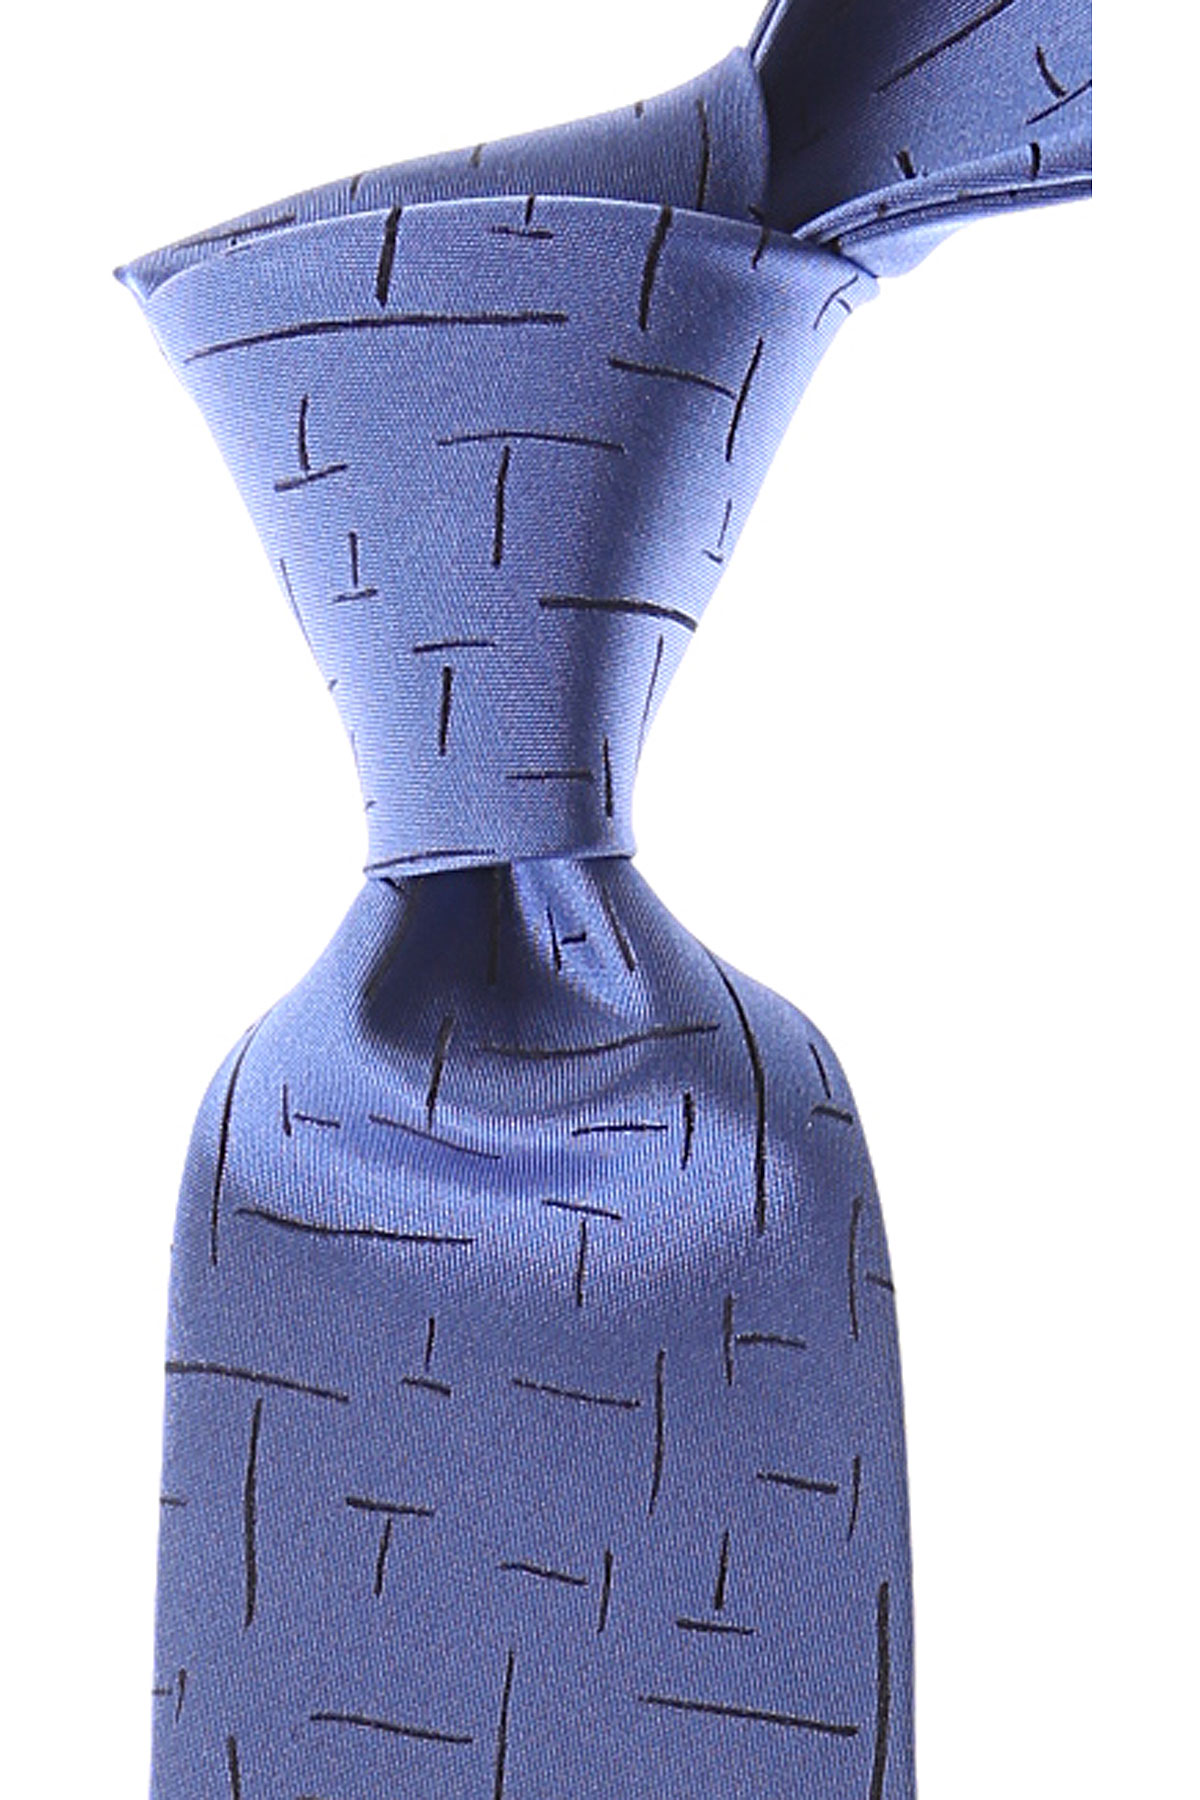 Cravates Gianni Versace , Bleu ciel, Soie, 2017